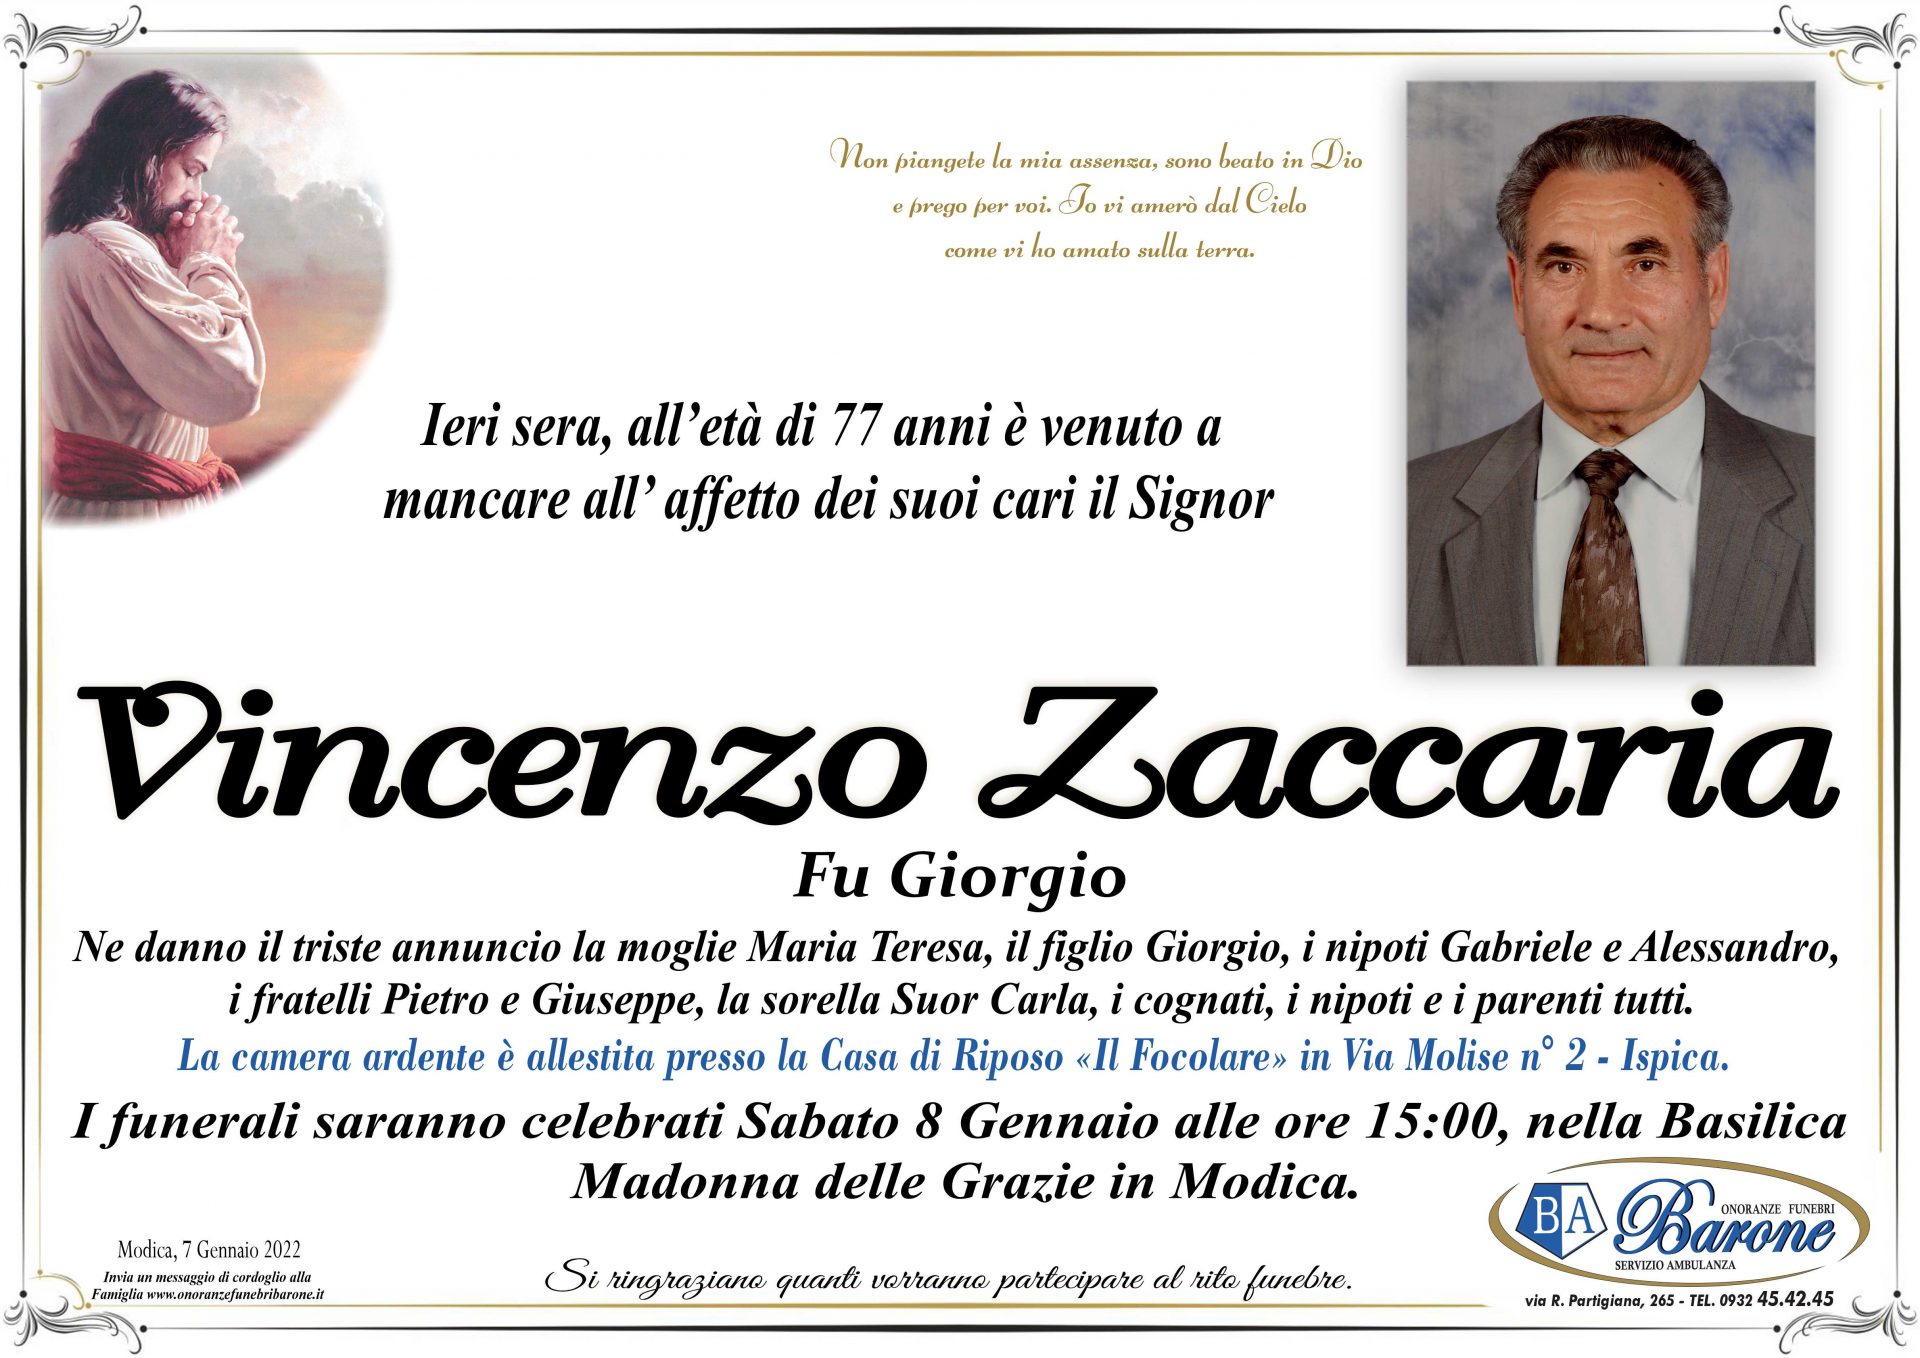 Vincenzo Zaccaria